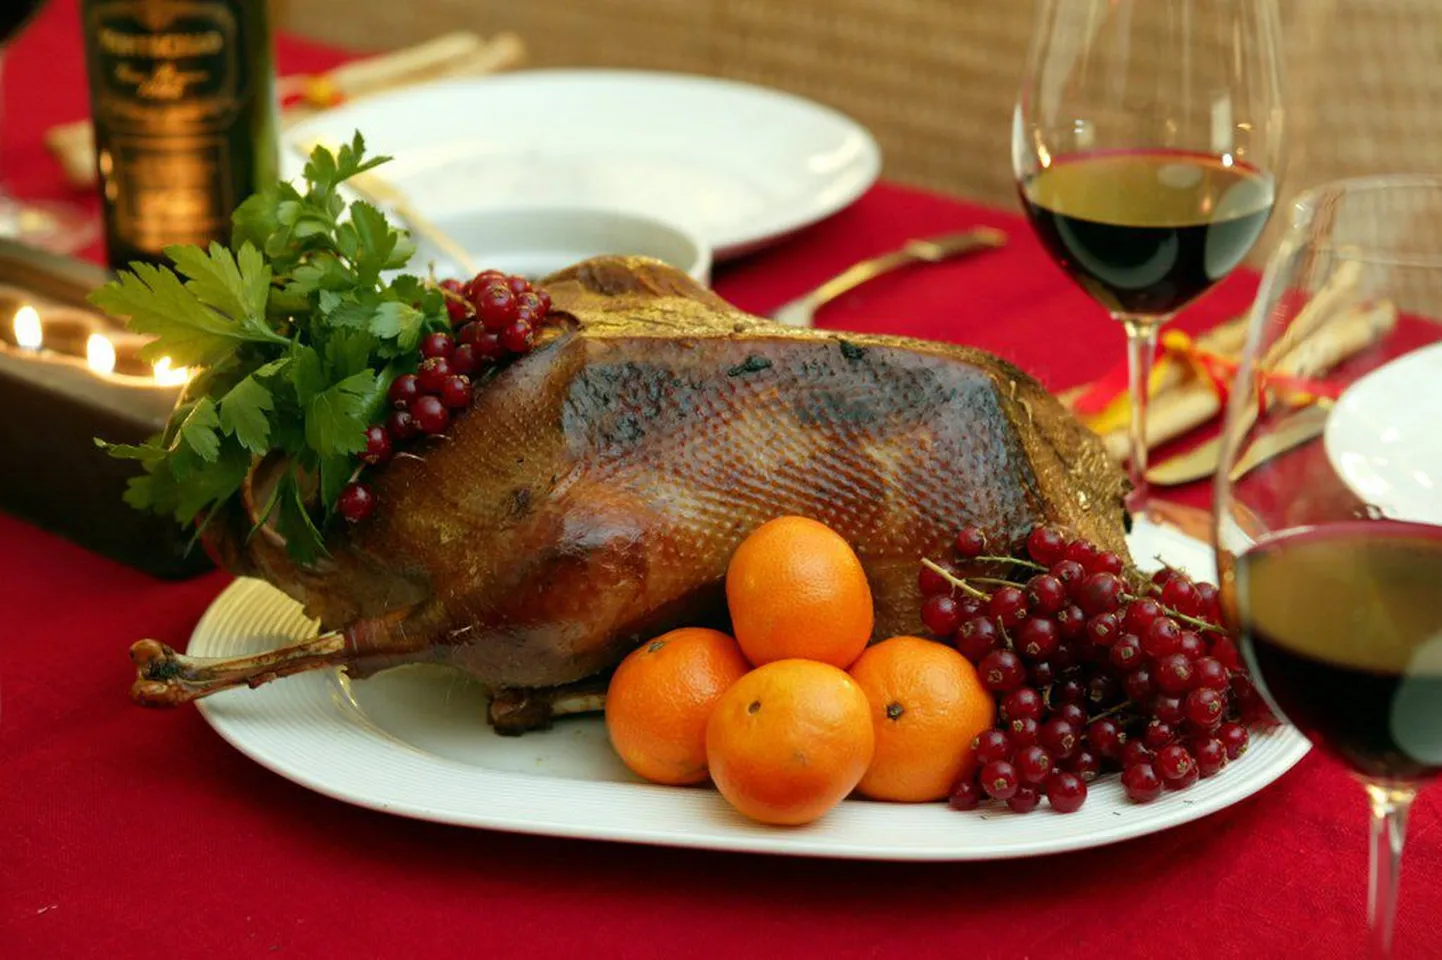 Tervisekaitseinspektsioon soovitab pühade ajal söömise ja joomisega piiri pidada ning järgida hügieenireegleid. Pildil jõulupraad.